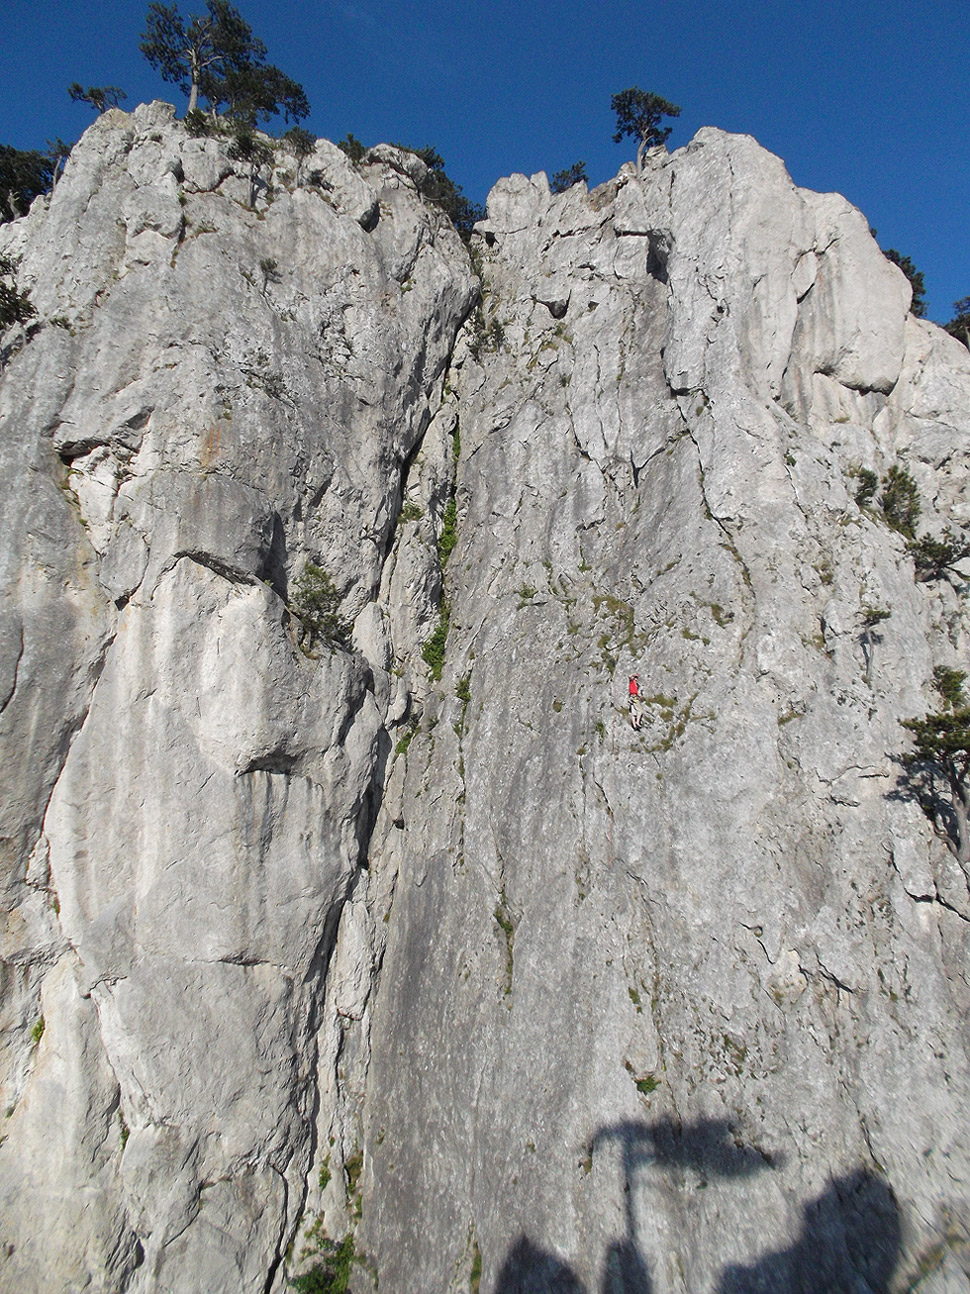 Climbing at Peilstein